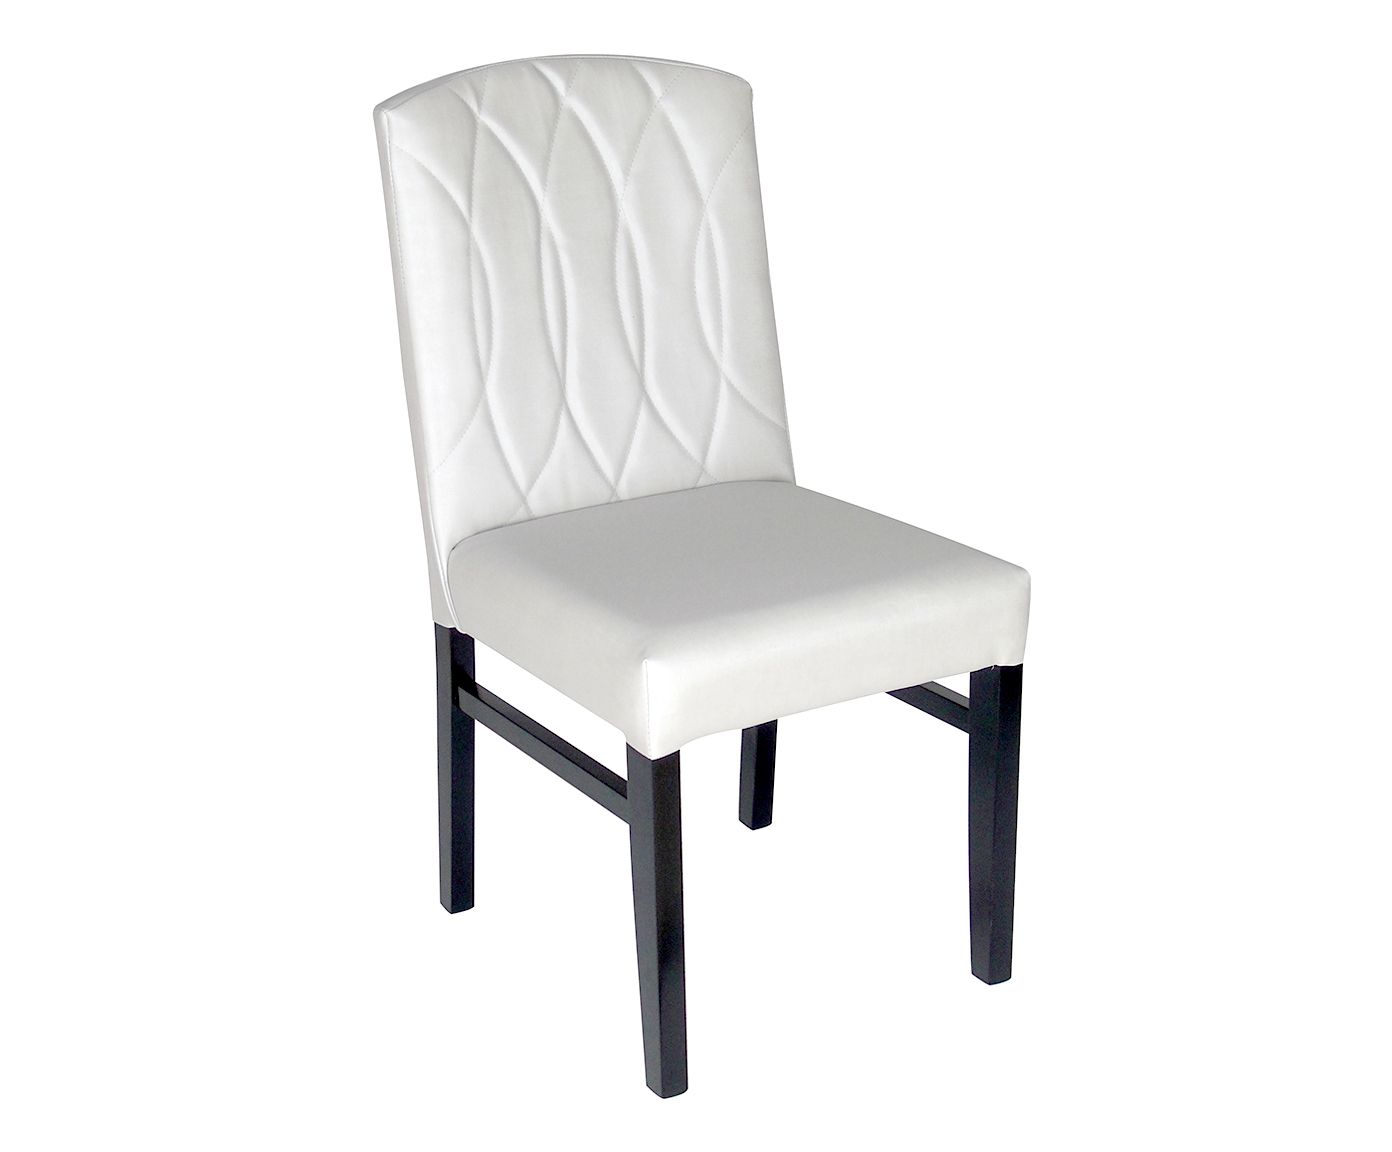 Cadeira Viena Basic | Westwing.com.br